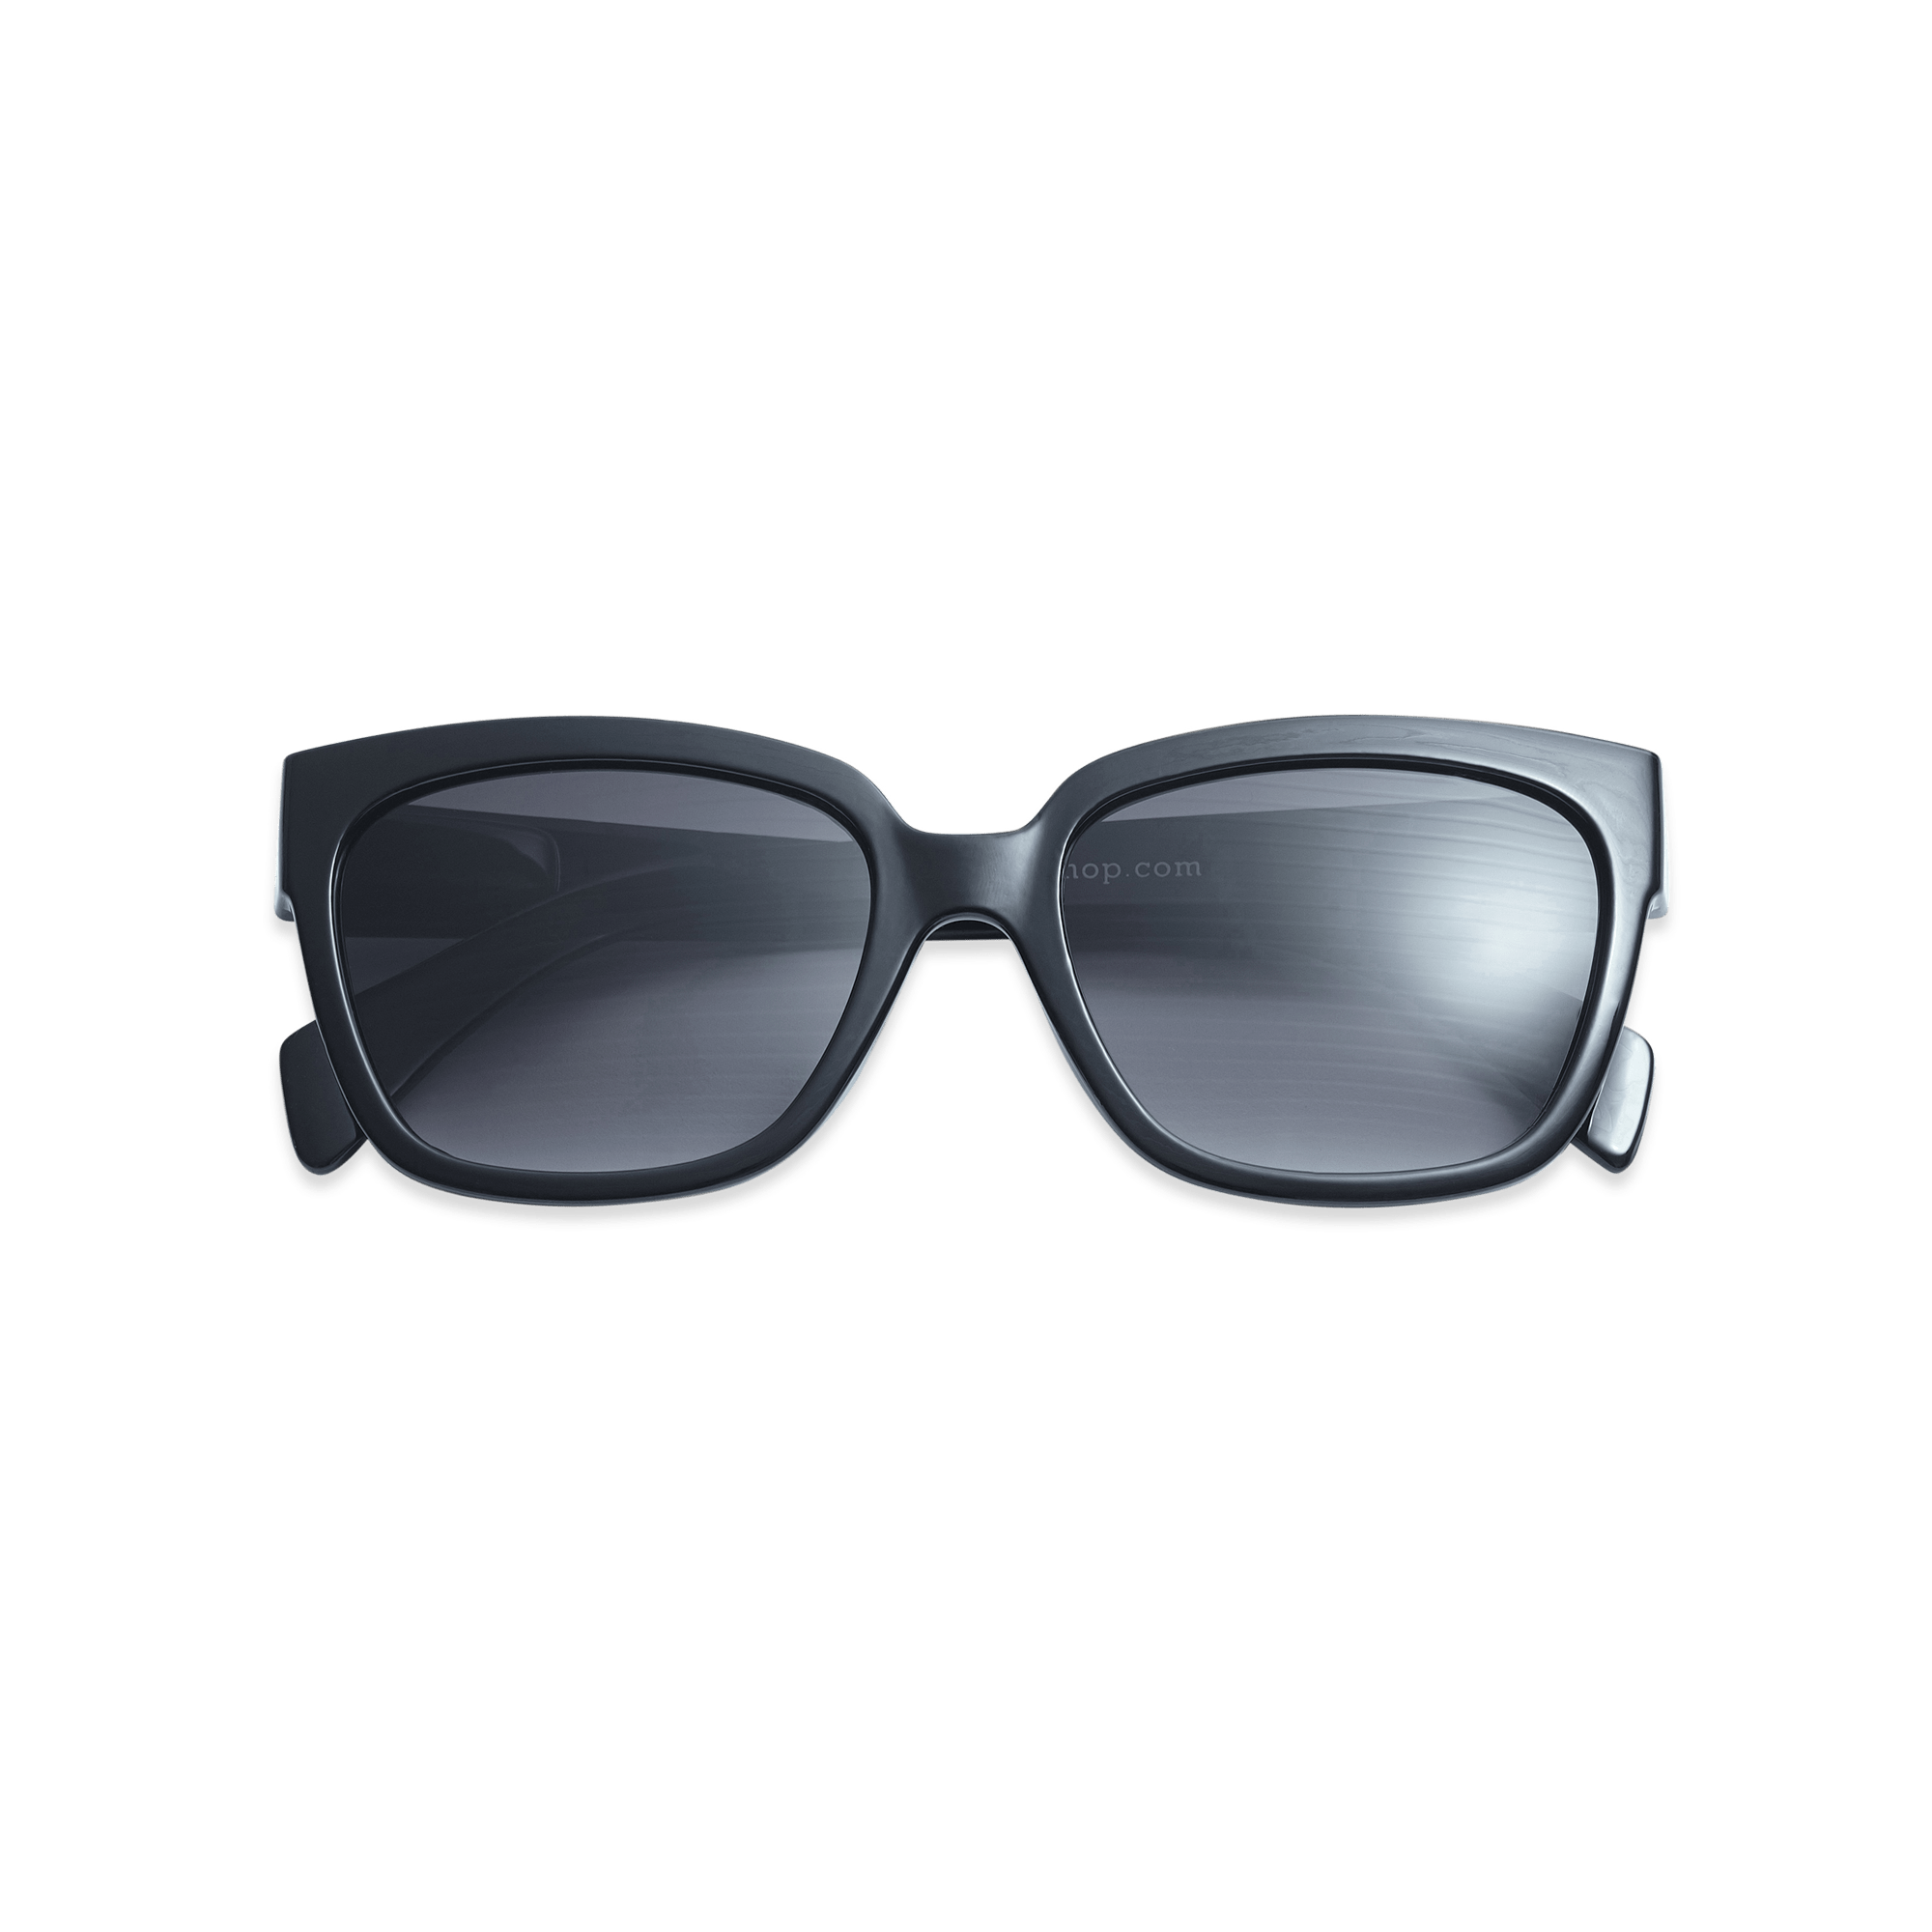 Sunglasses Mood - black